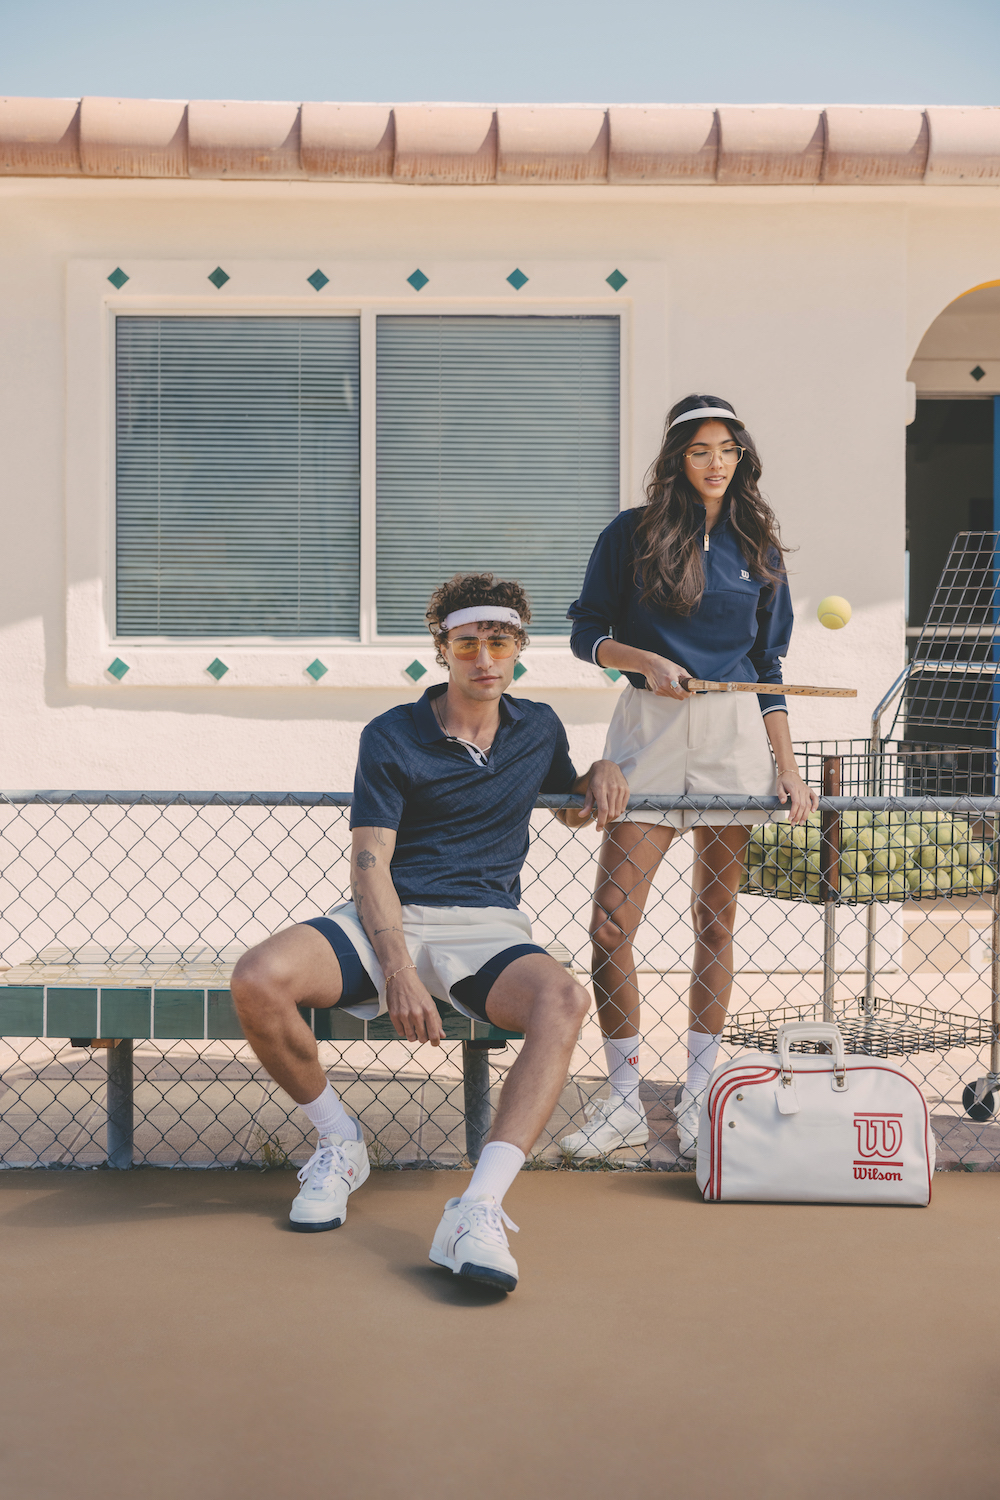 Wilson Tennis Dress Blue & White Team Built in Bra Athletic